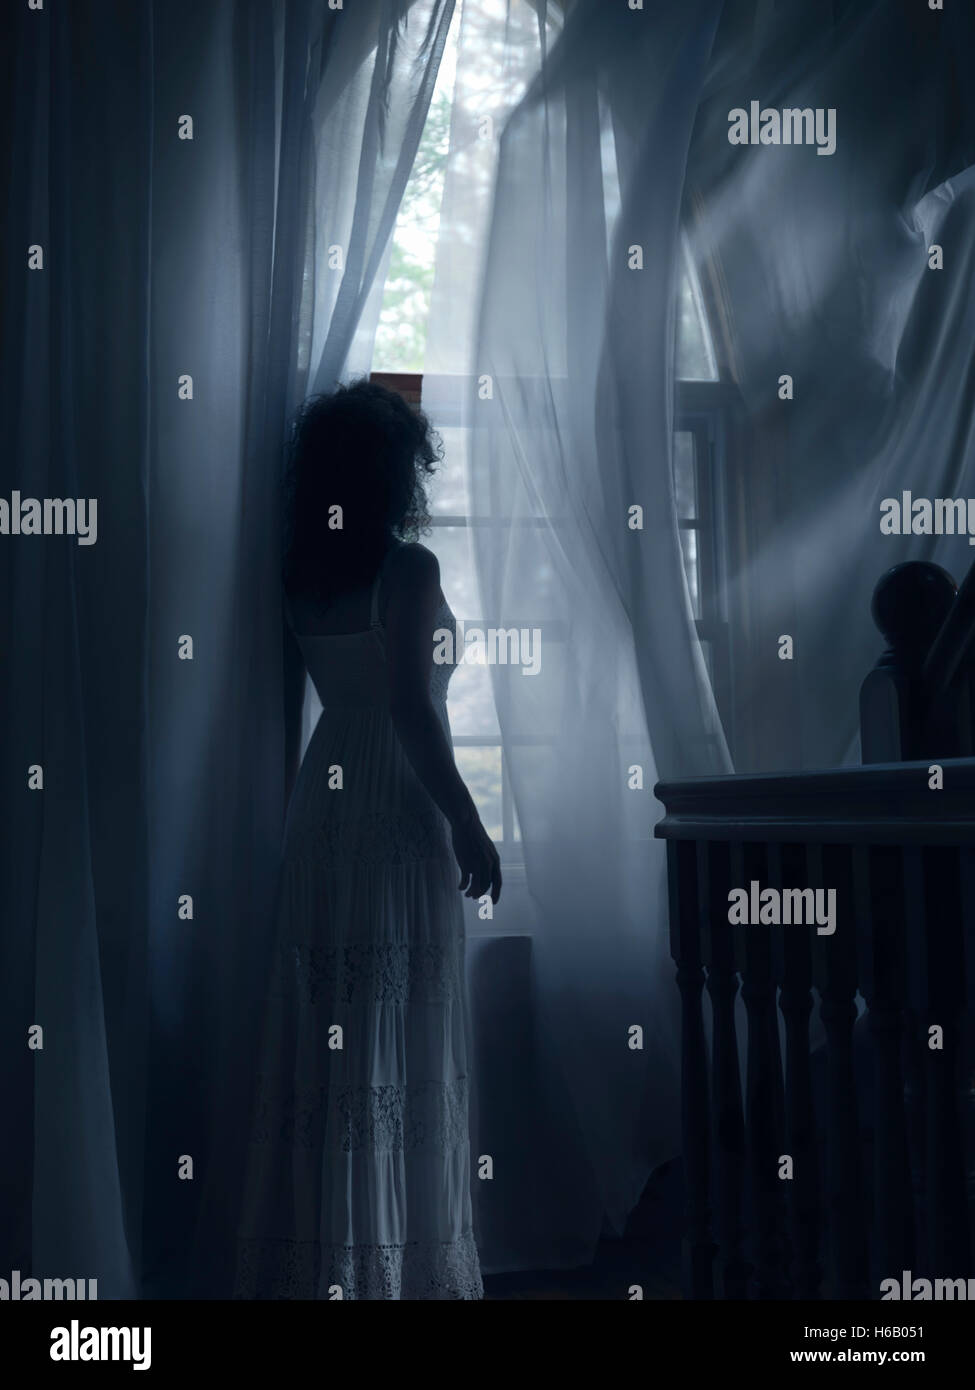 Führerschein und Fingerabdrücke bei MaximImages.com - Junge Frau in einem weißen Kleid, die an einem Fenster steht und in den Windvorhängen in einem dunklen Raum eines Hauses fliegt Stockfoto